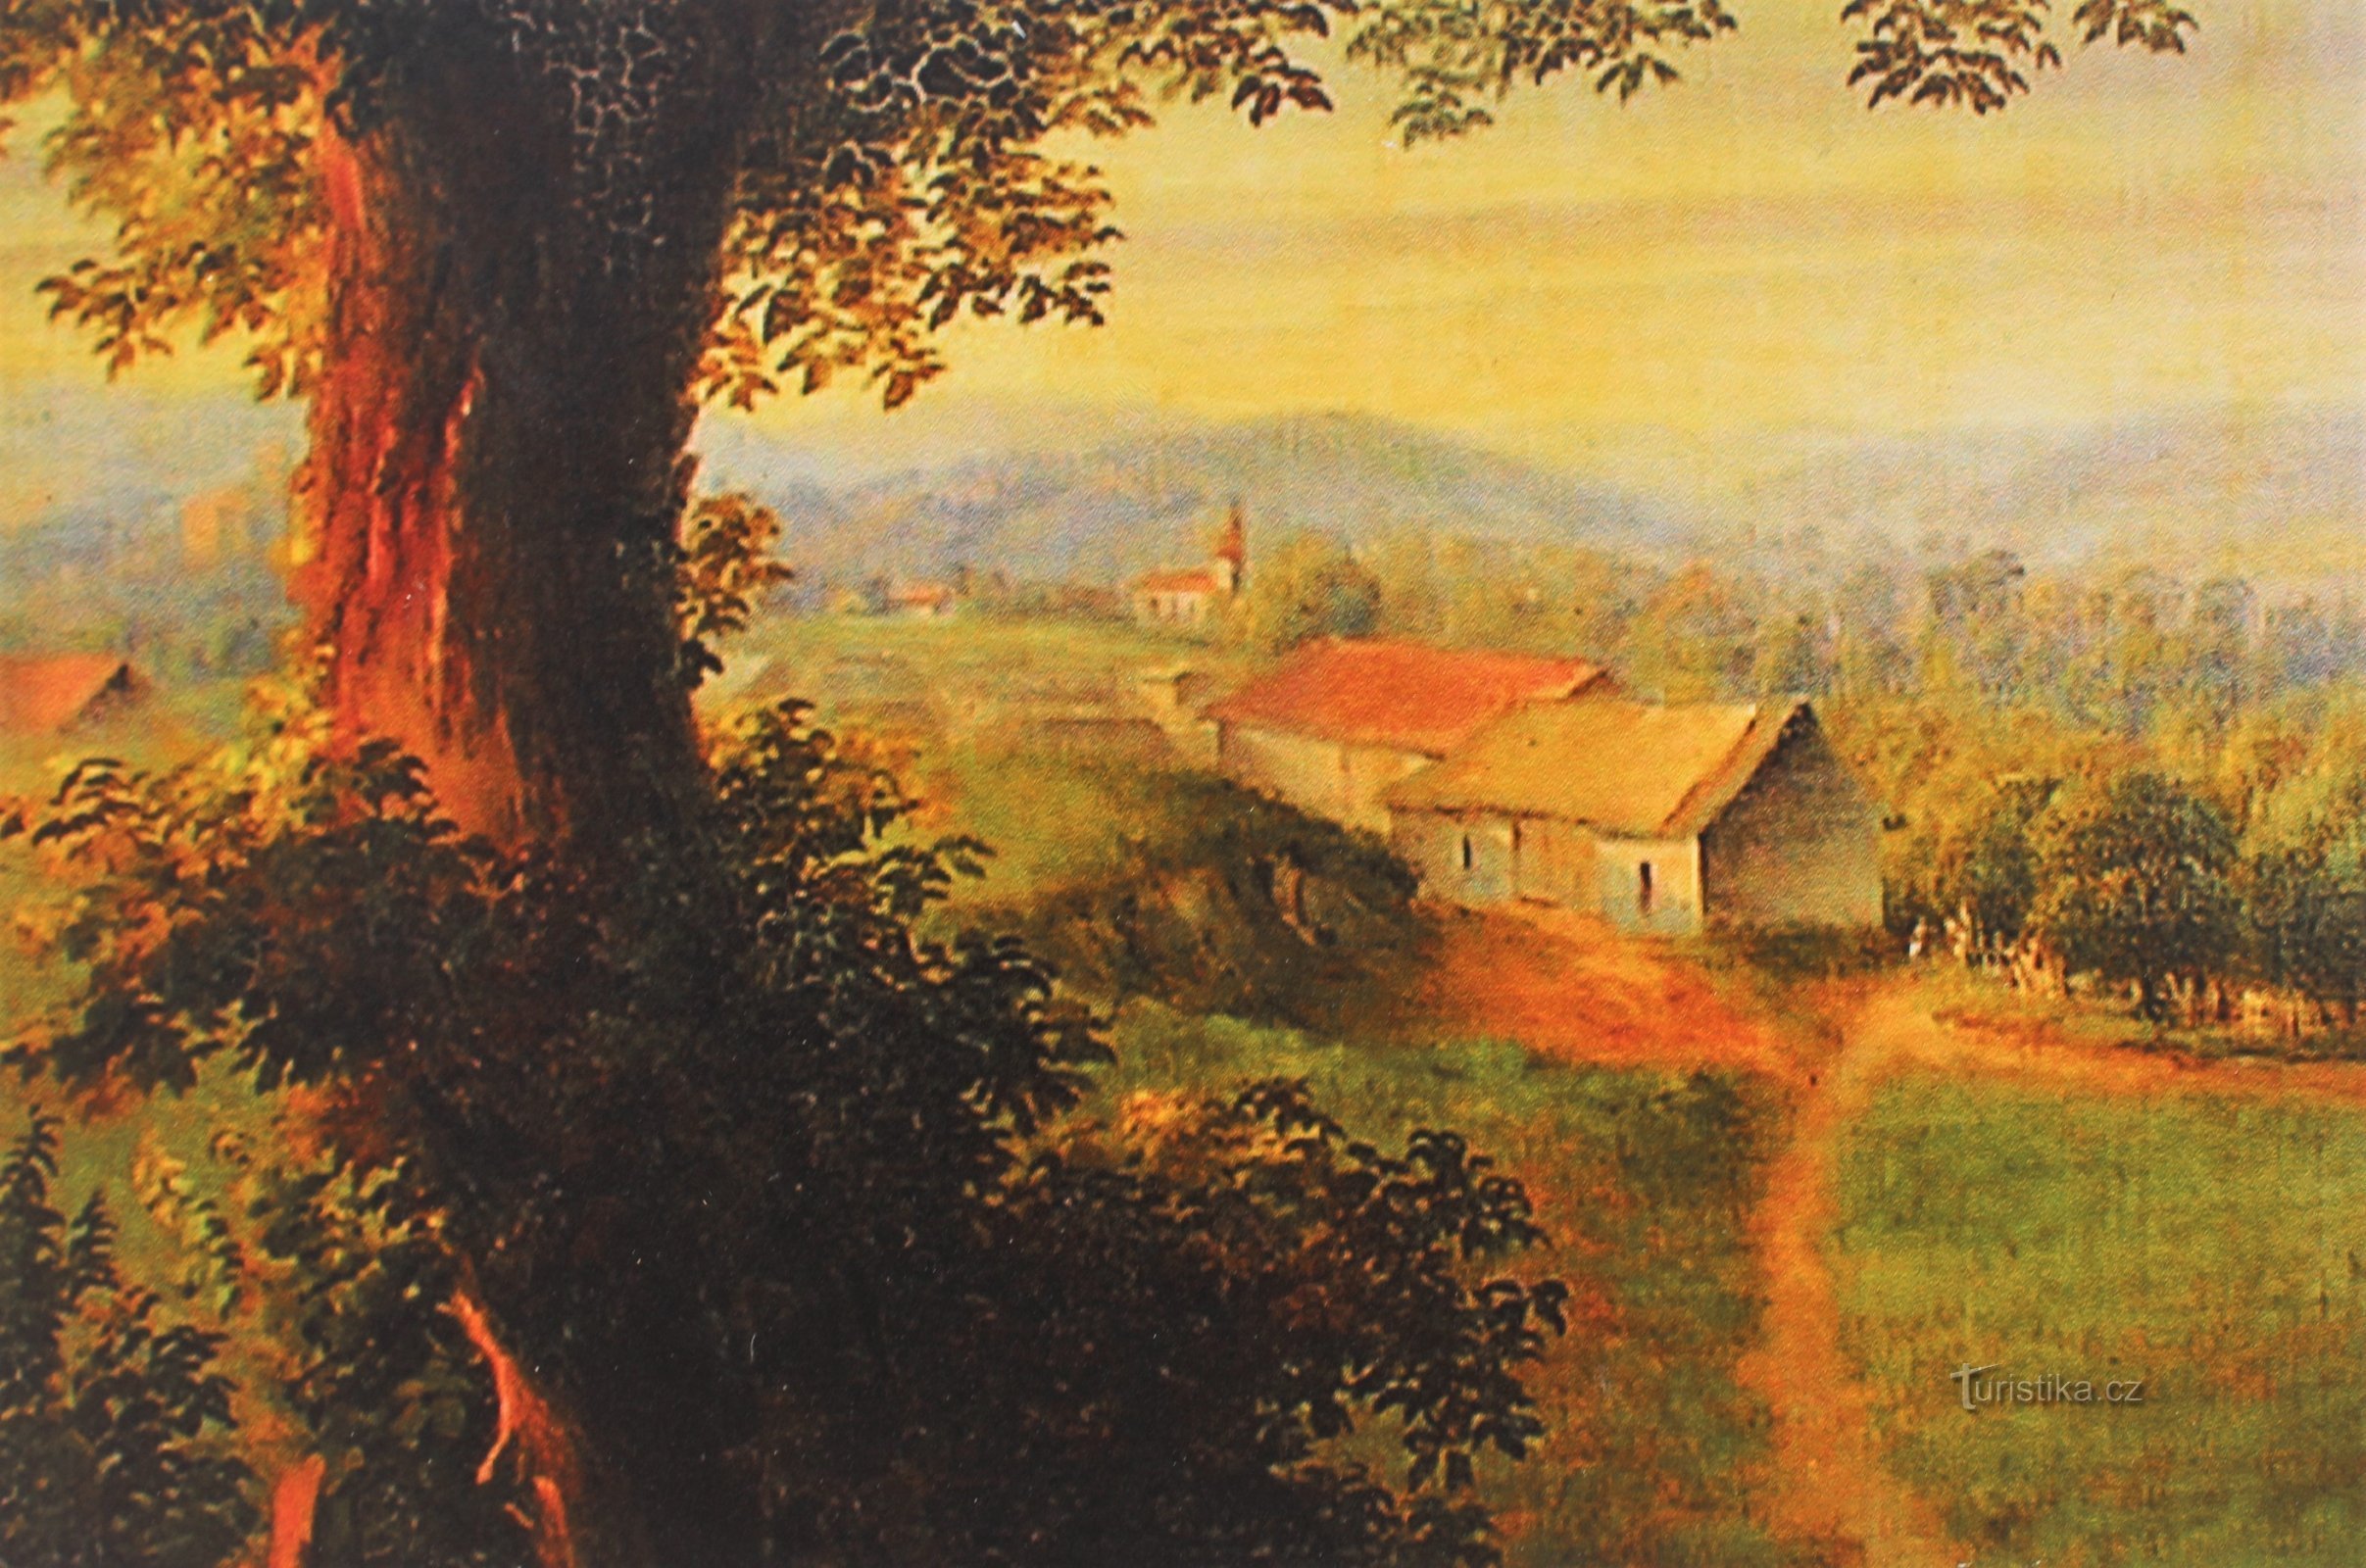 hambare Čeladice și în spatele lor fundațiile caselor deteriorate de apă, decupat dintr-un tablou din secolul al XVIII-lea